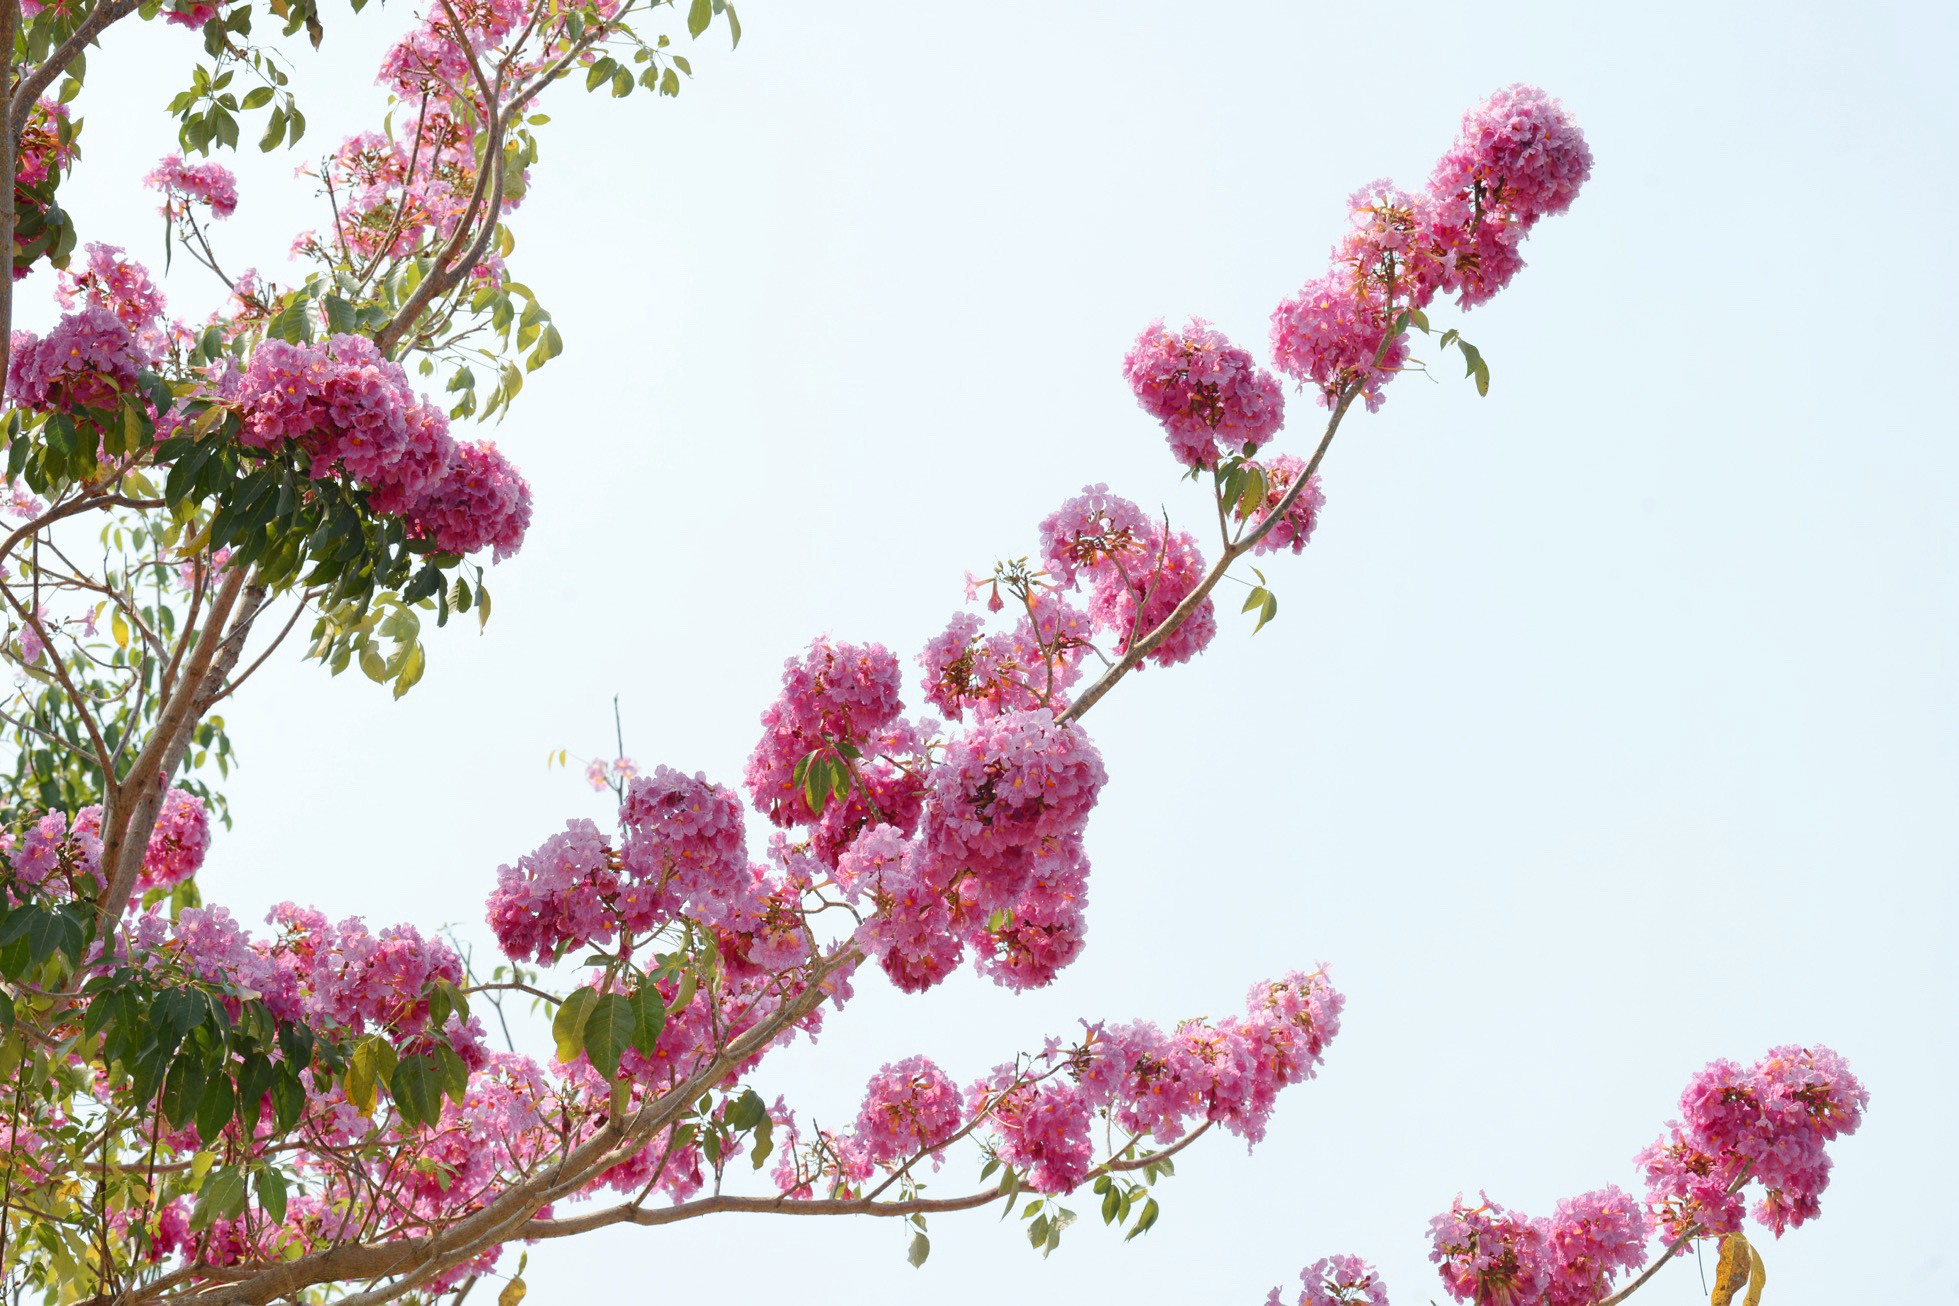 Hoa kèn hồng (còn gọi là hồng phấn, chuông hồng) có màu hồng phấn tựa như hoa anh đào. Hoa có nguồn gốc châu Mỹ, mọc thành từng chùm từ 10 đến 20 bông trên đầu cành.